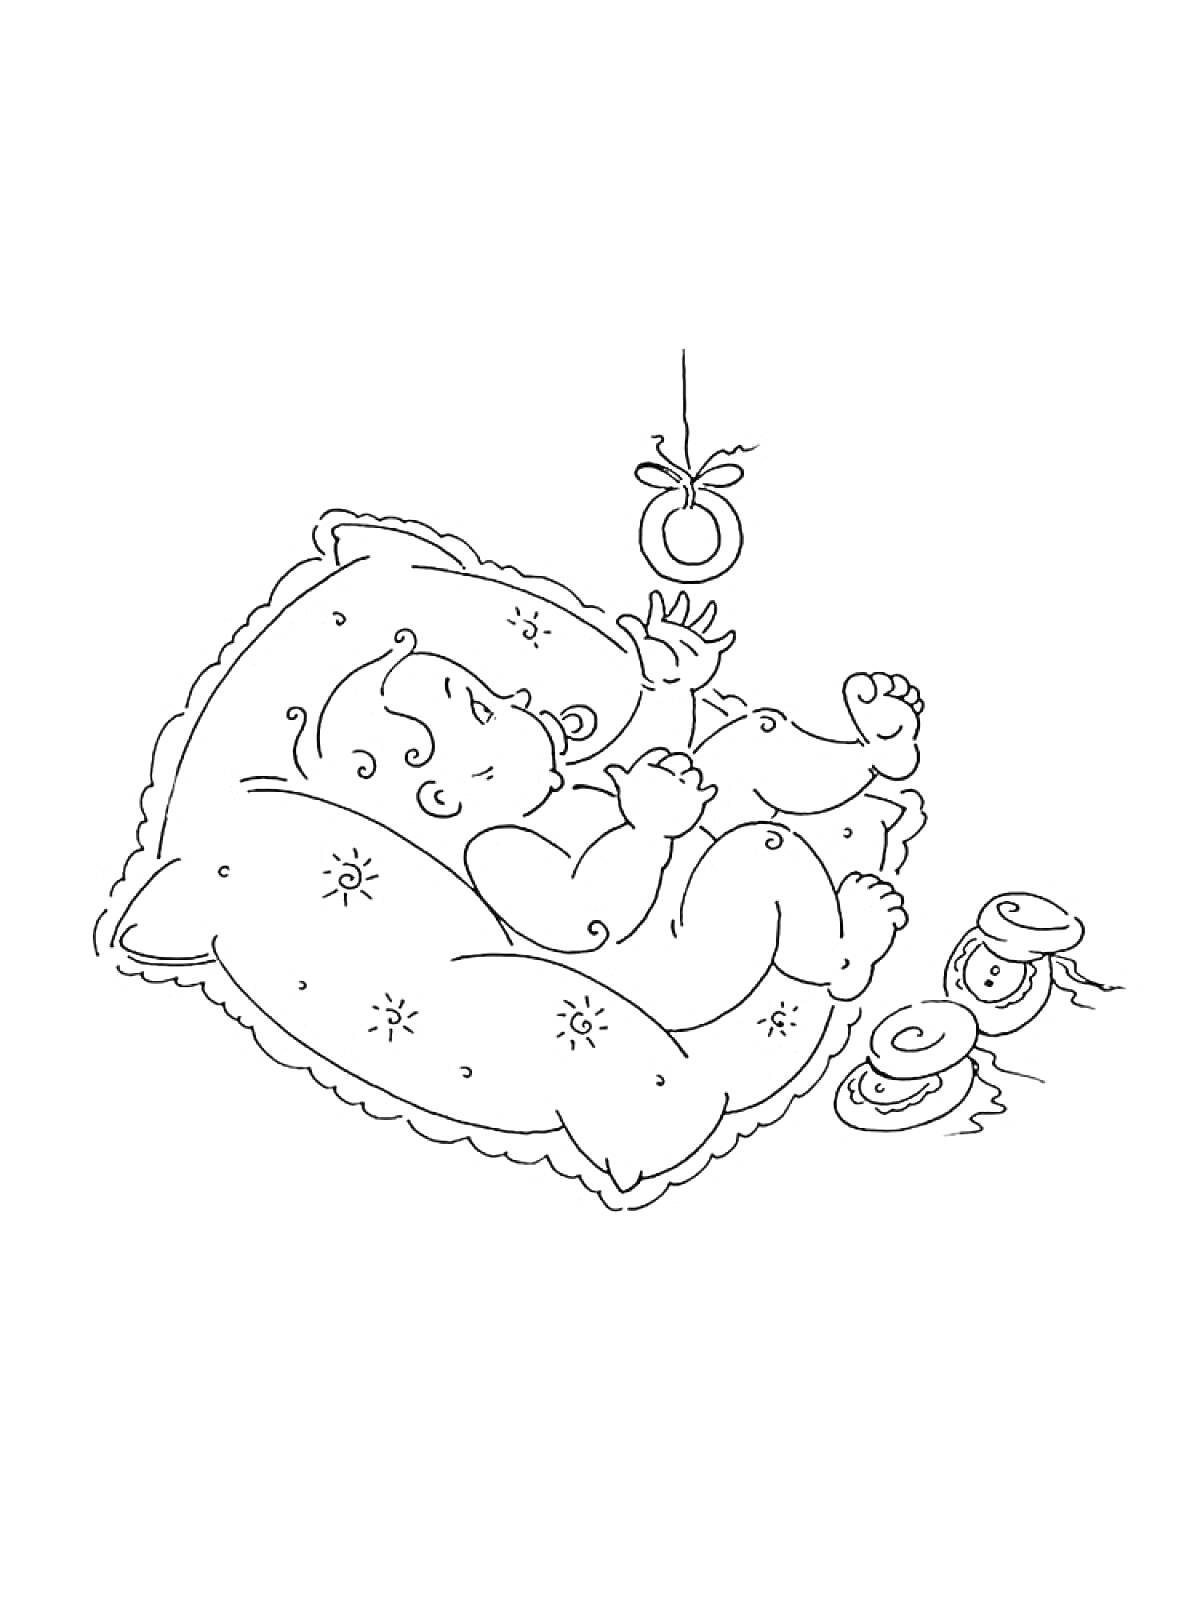 Младенец на подушке с погремушкой и ботиночками